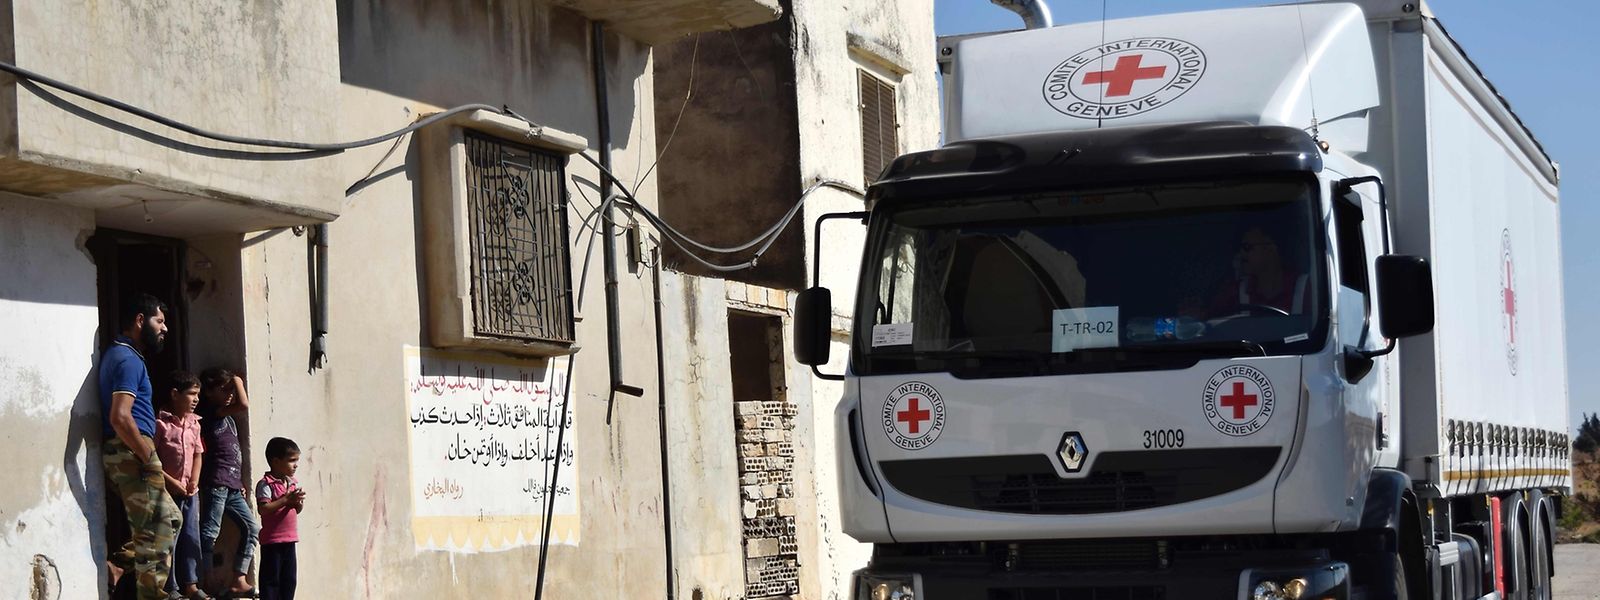 Das Rote Kreuz hat in Syrien einen schweren Stand.